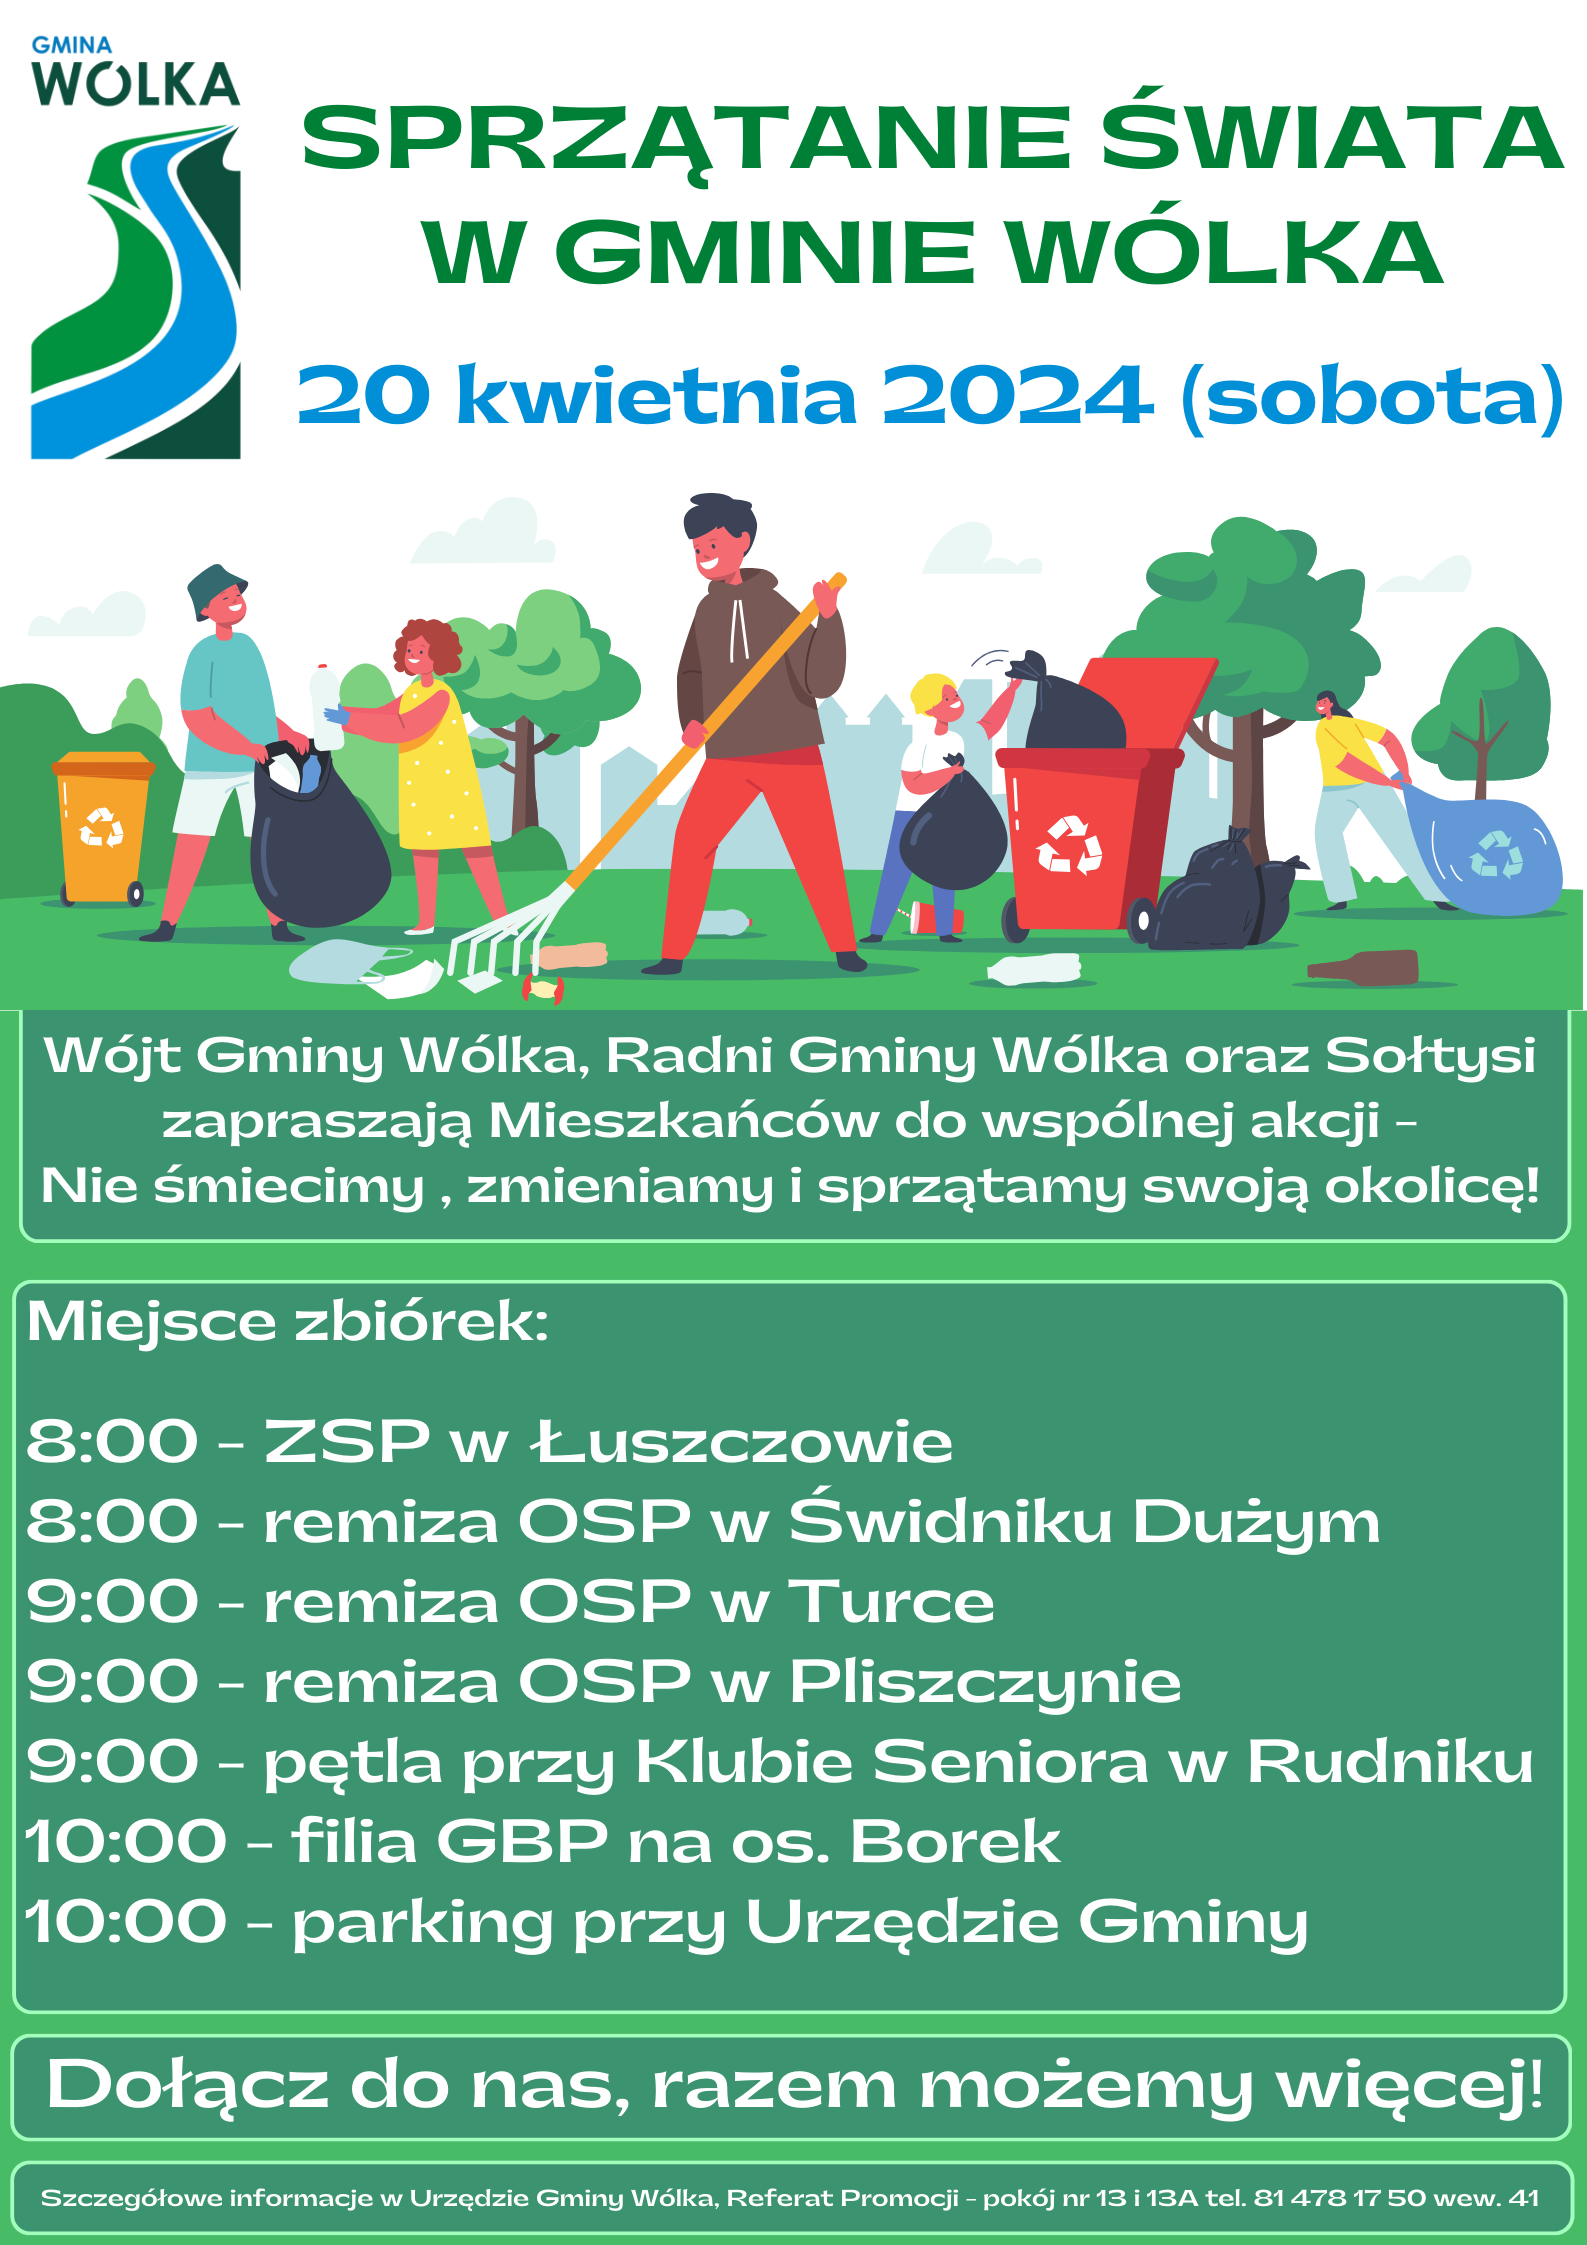 Zdjęcie przedstawia barwny plakat informacyjny o akcji sprzątania "Sprzątanie Świata" w Gminie Wólka, zaplanowanej na 20 kwietnia 2024, z harmonogramem wydarzeń i grafikami ludzi, drzew i śmieci.